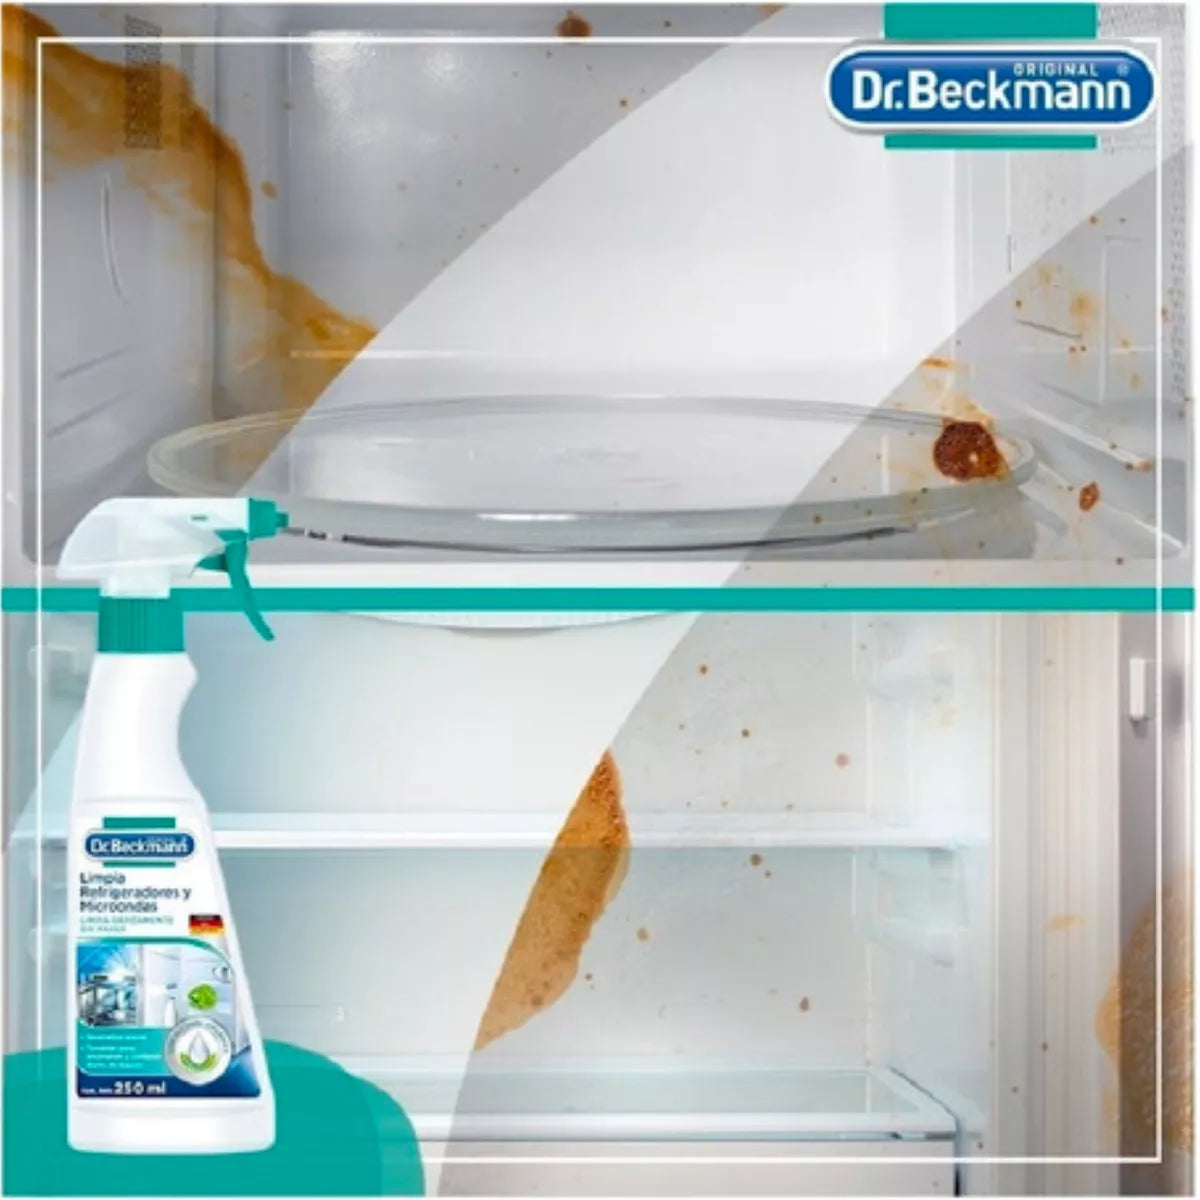 Limpia Refrigeradores Y Microondas 250ml Dr.Beckmann